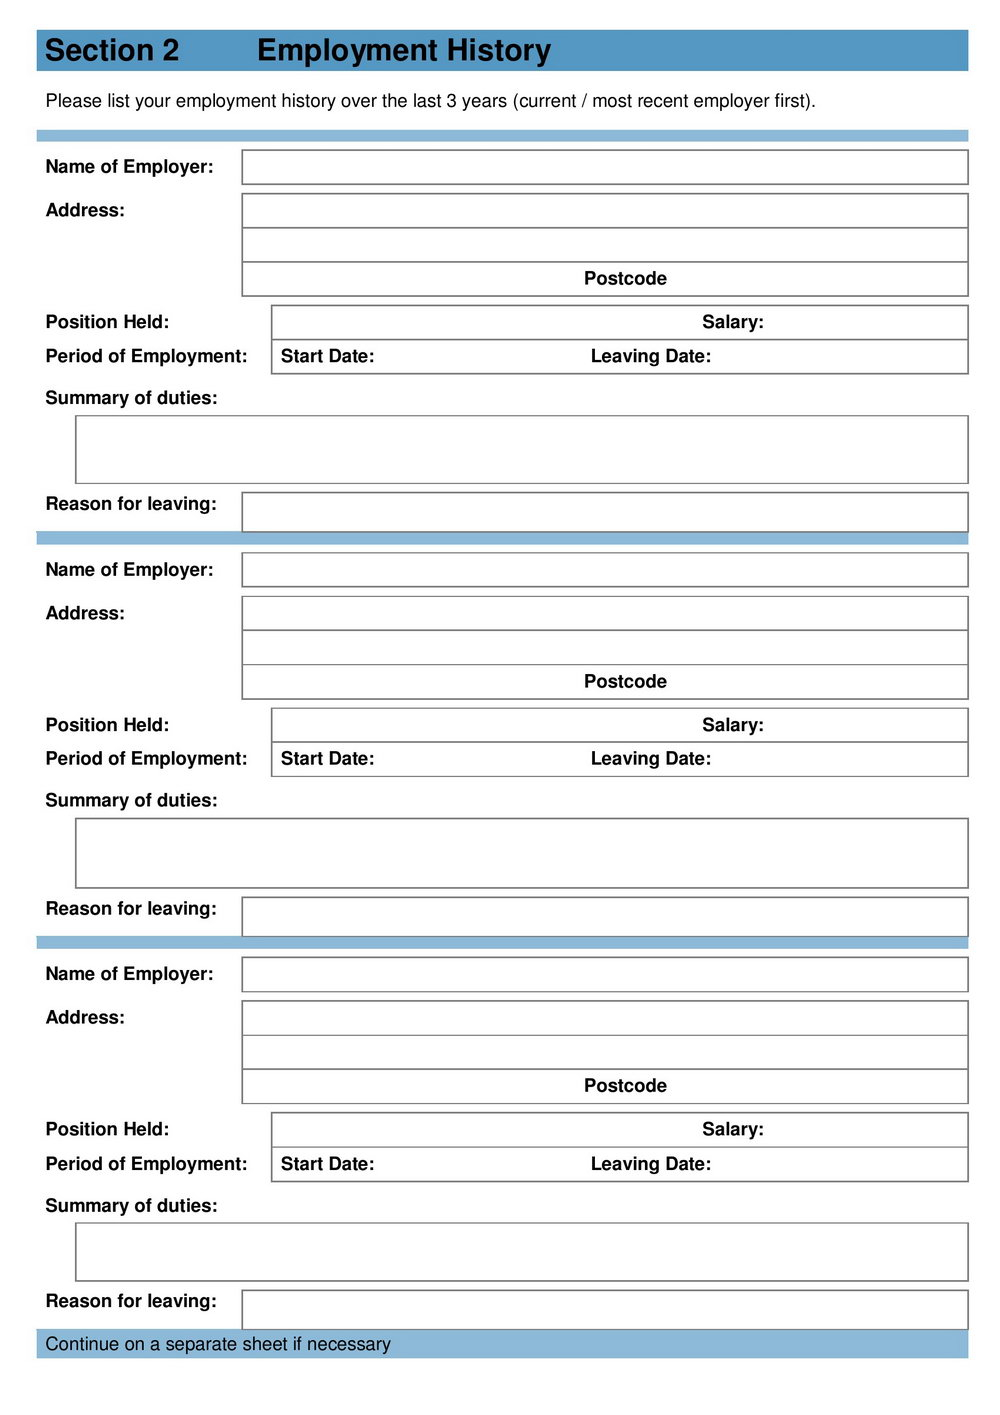 kroger-application-pdf-print-out-printable-application